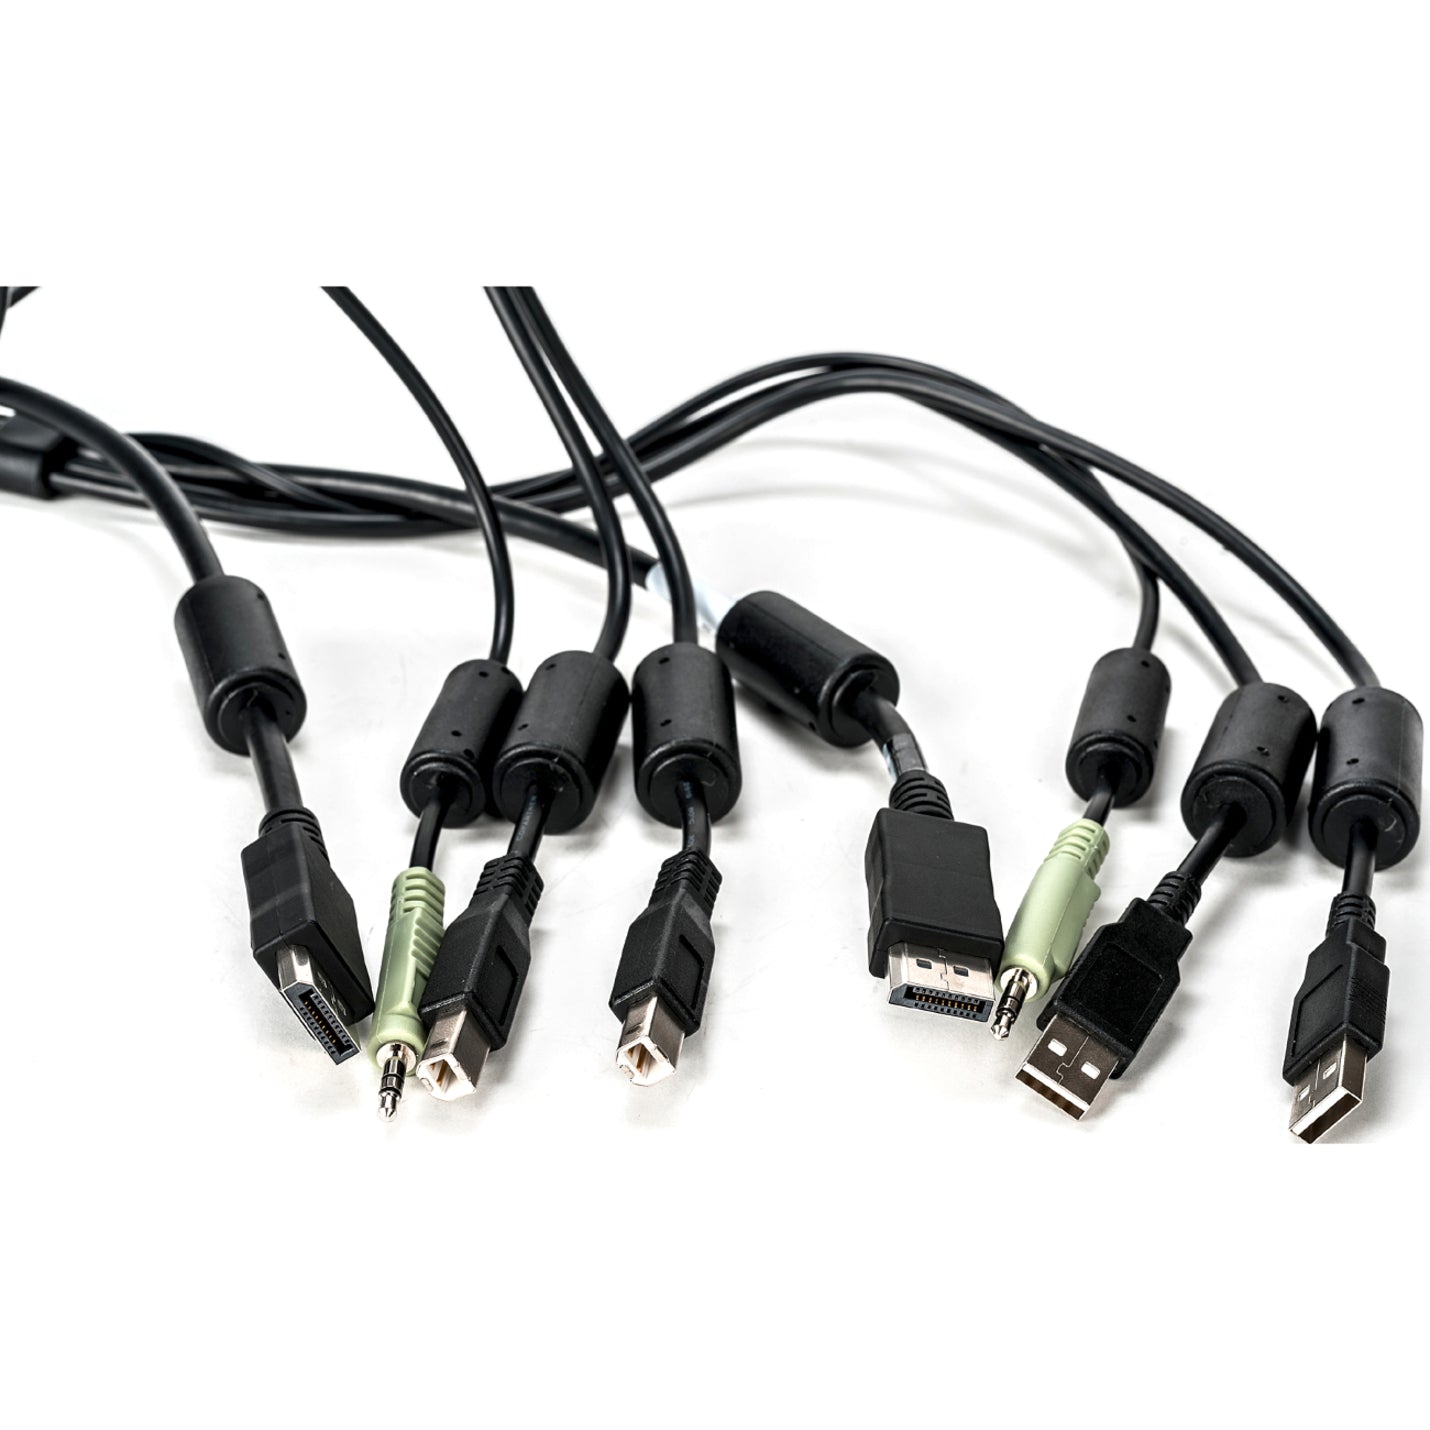 Avocent CBL0104 SC845D Cable - 6 pies Teclado y Ratón USB Cable DisplayPort y de Audio